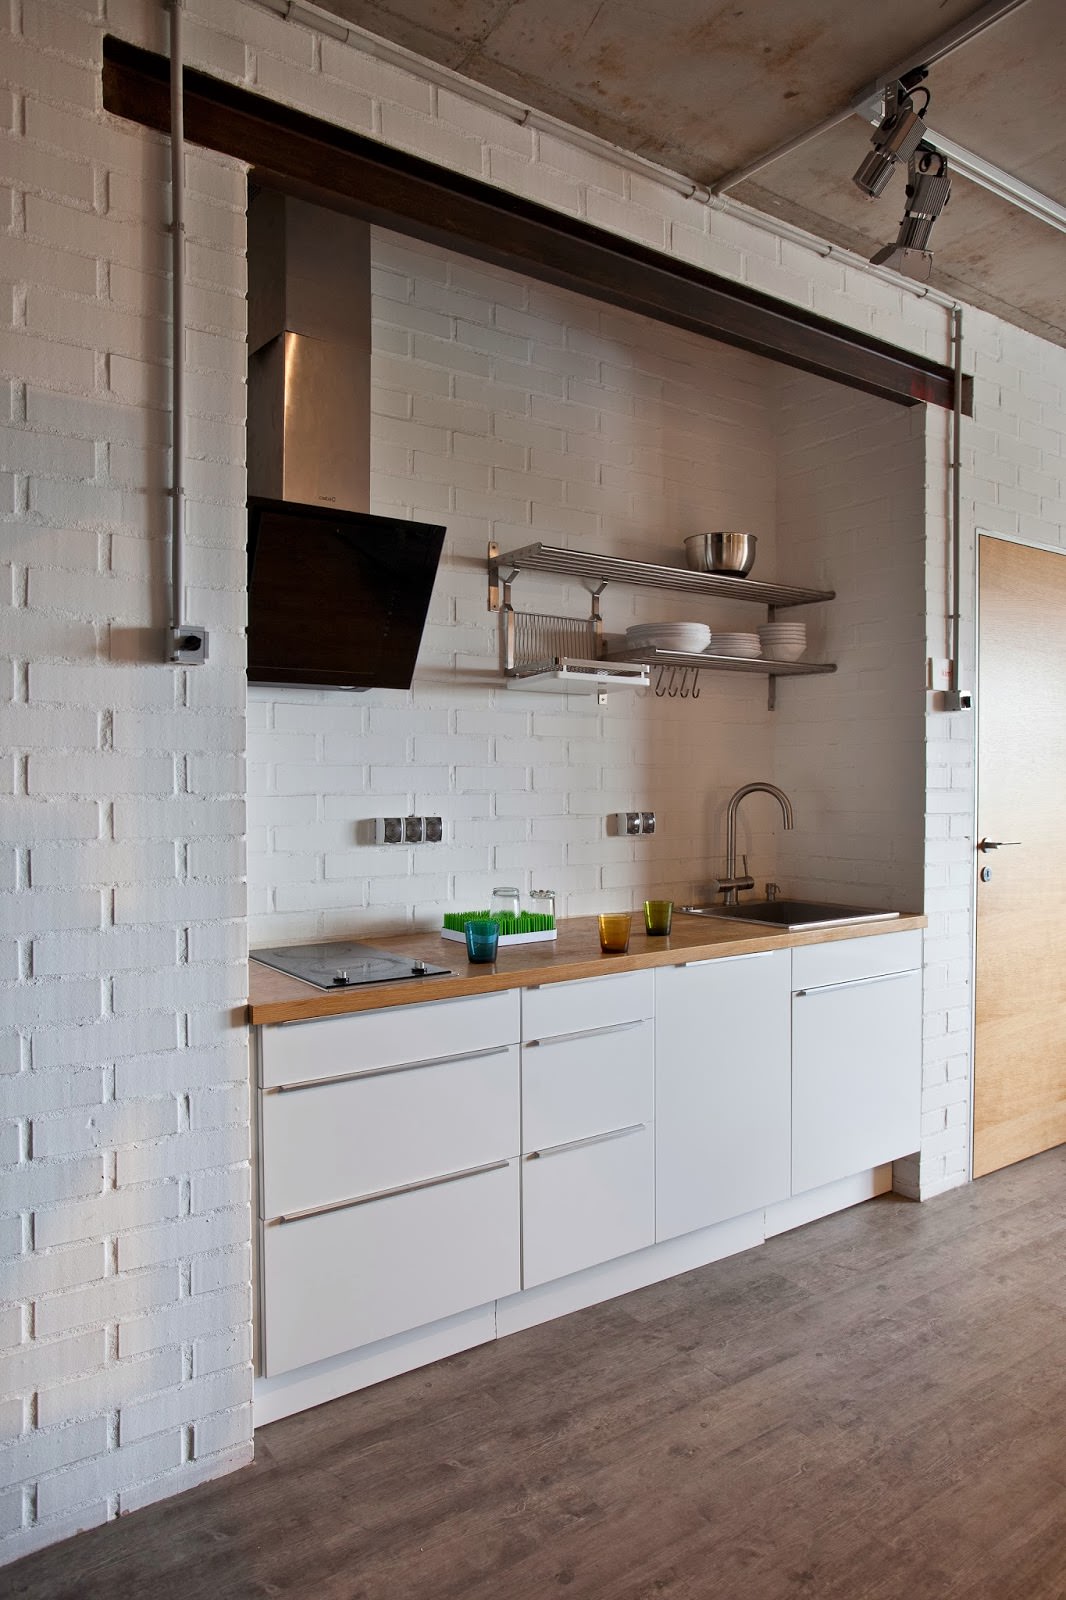 kjøkken med hvite murvegger i det indre av en kreativ leilighet